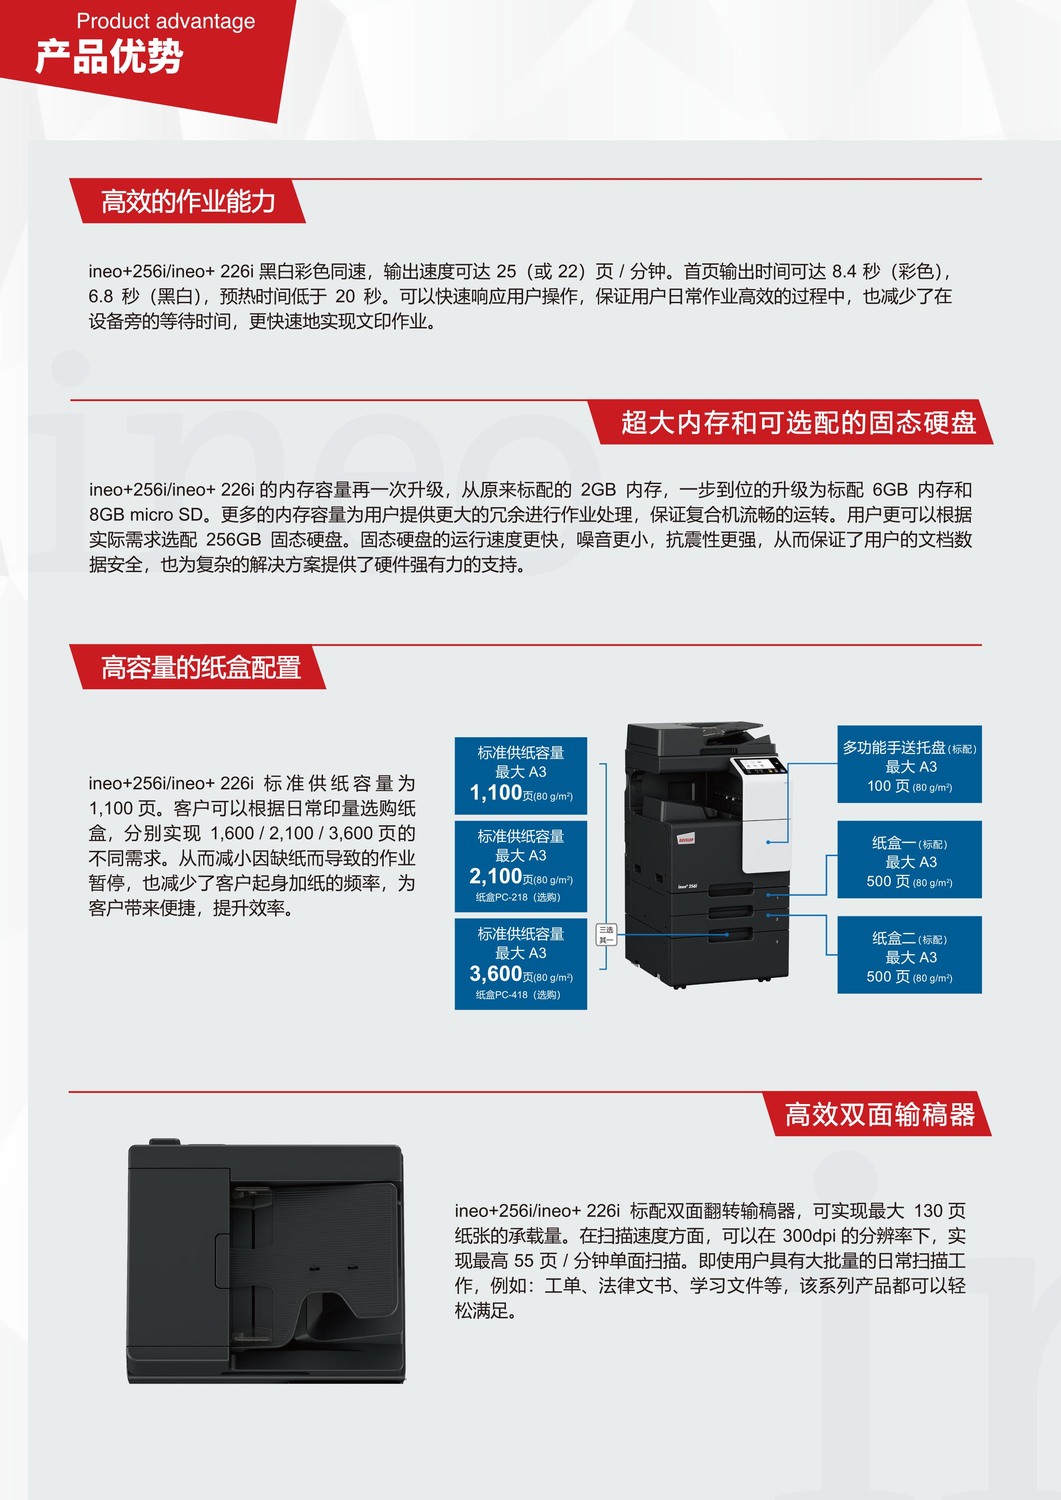 德凡ineo+226i-德凡+226i产品优势，高效的作业能力，超大内存和可选购固态硬盘，高效双面输稿器，-广州复印机租赁-广州打印机出租-广州复印机出租3.jpg